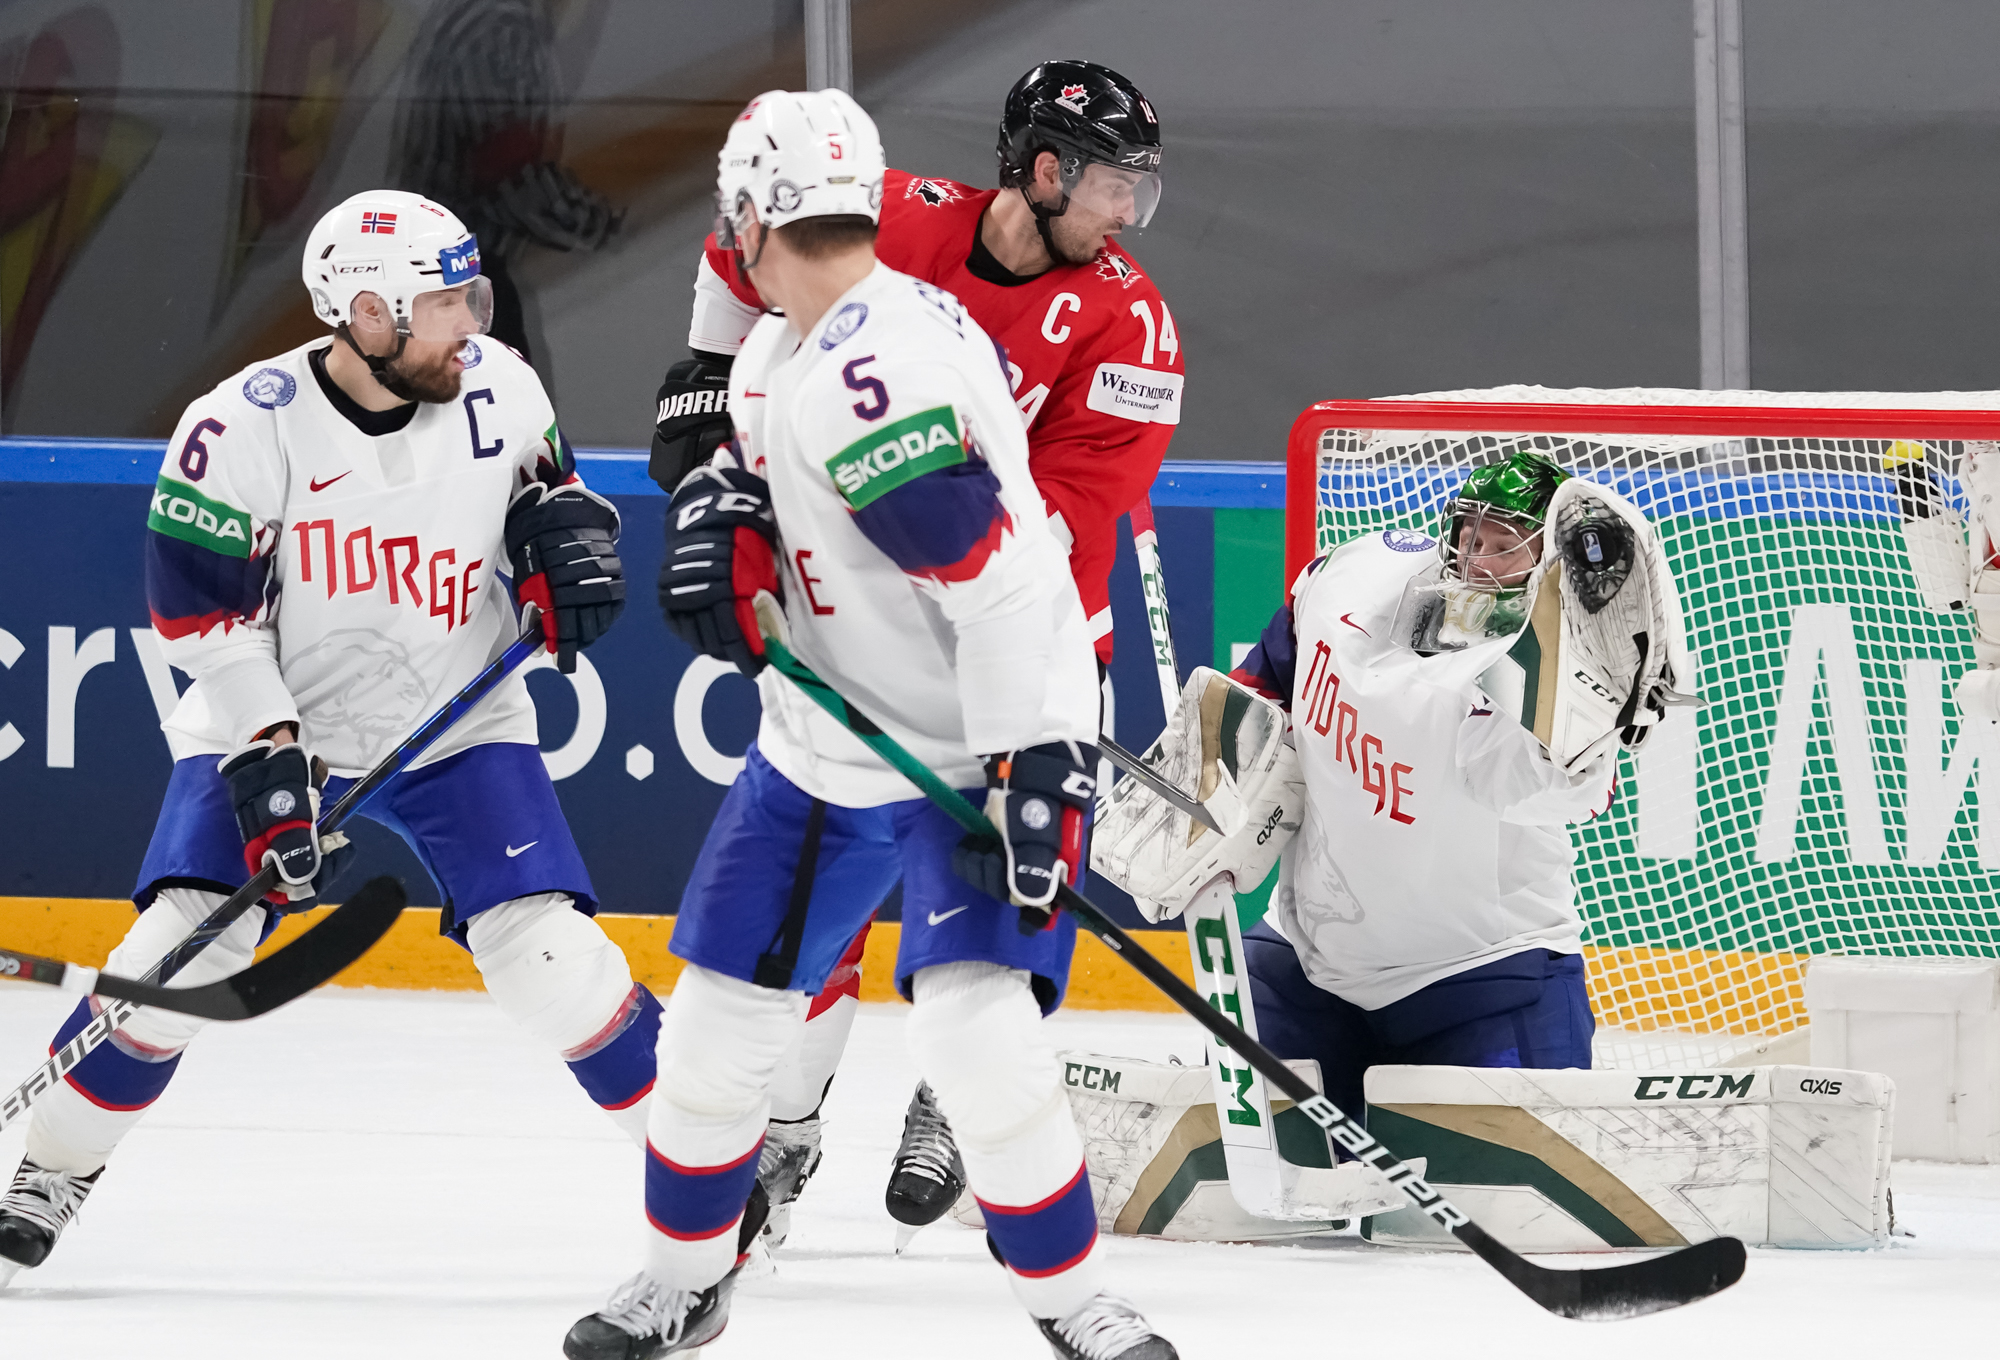 IIHF Canada wins mustwin game